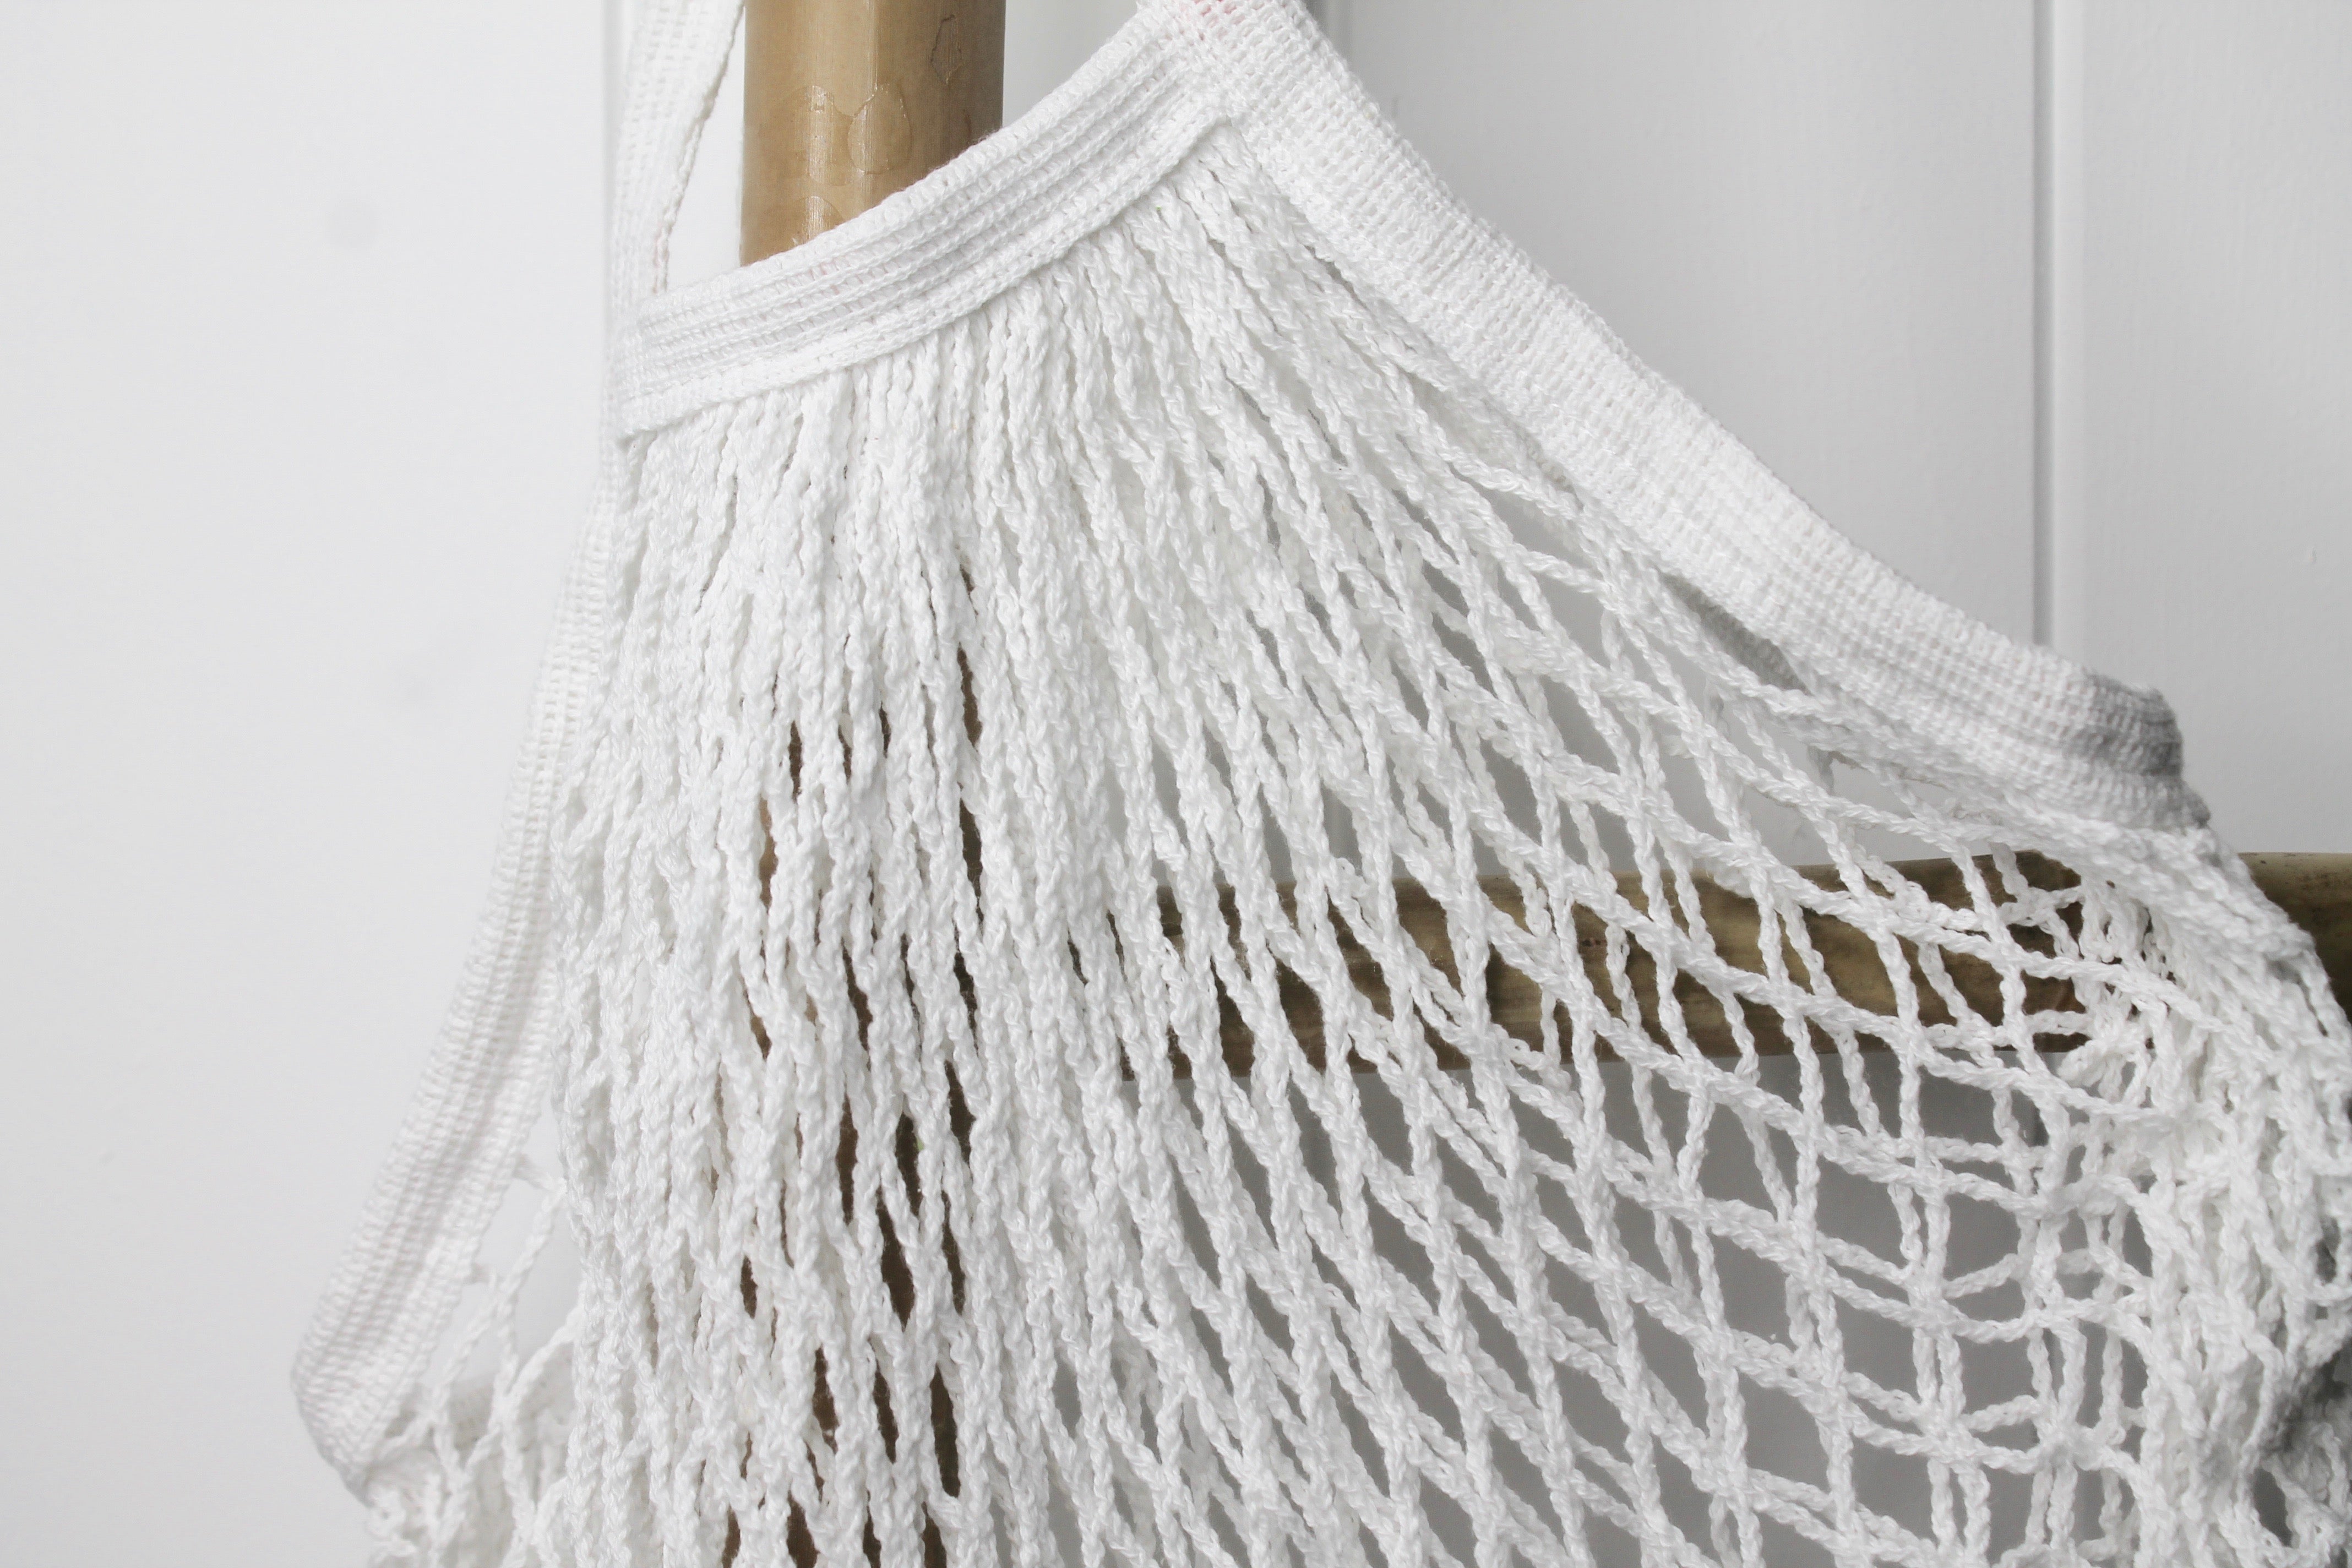 Cotton Net Stretch Bag - White